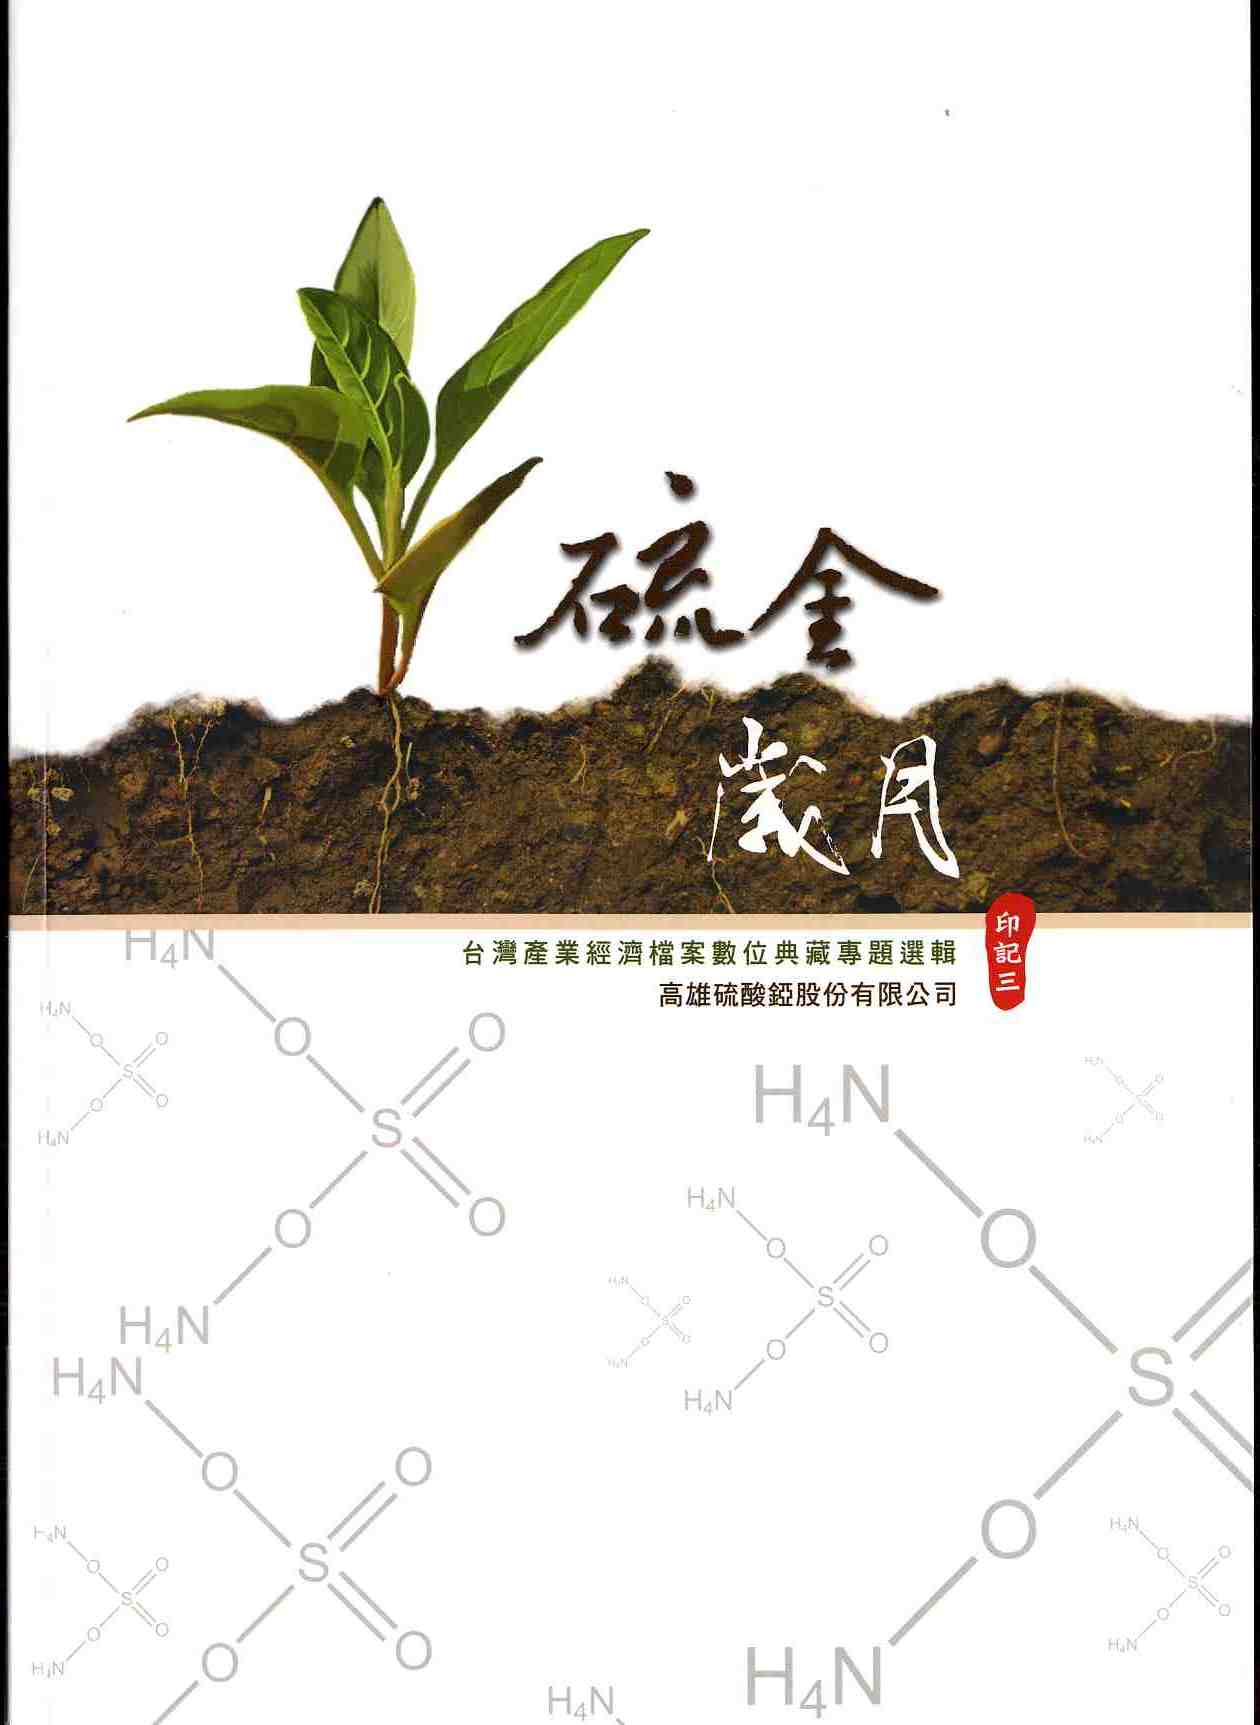 硫金歲月-台灣產業經濟檔案數位典藏專題選輯-高雄硫酸錏股份有限公司-印記三